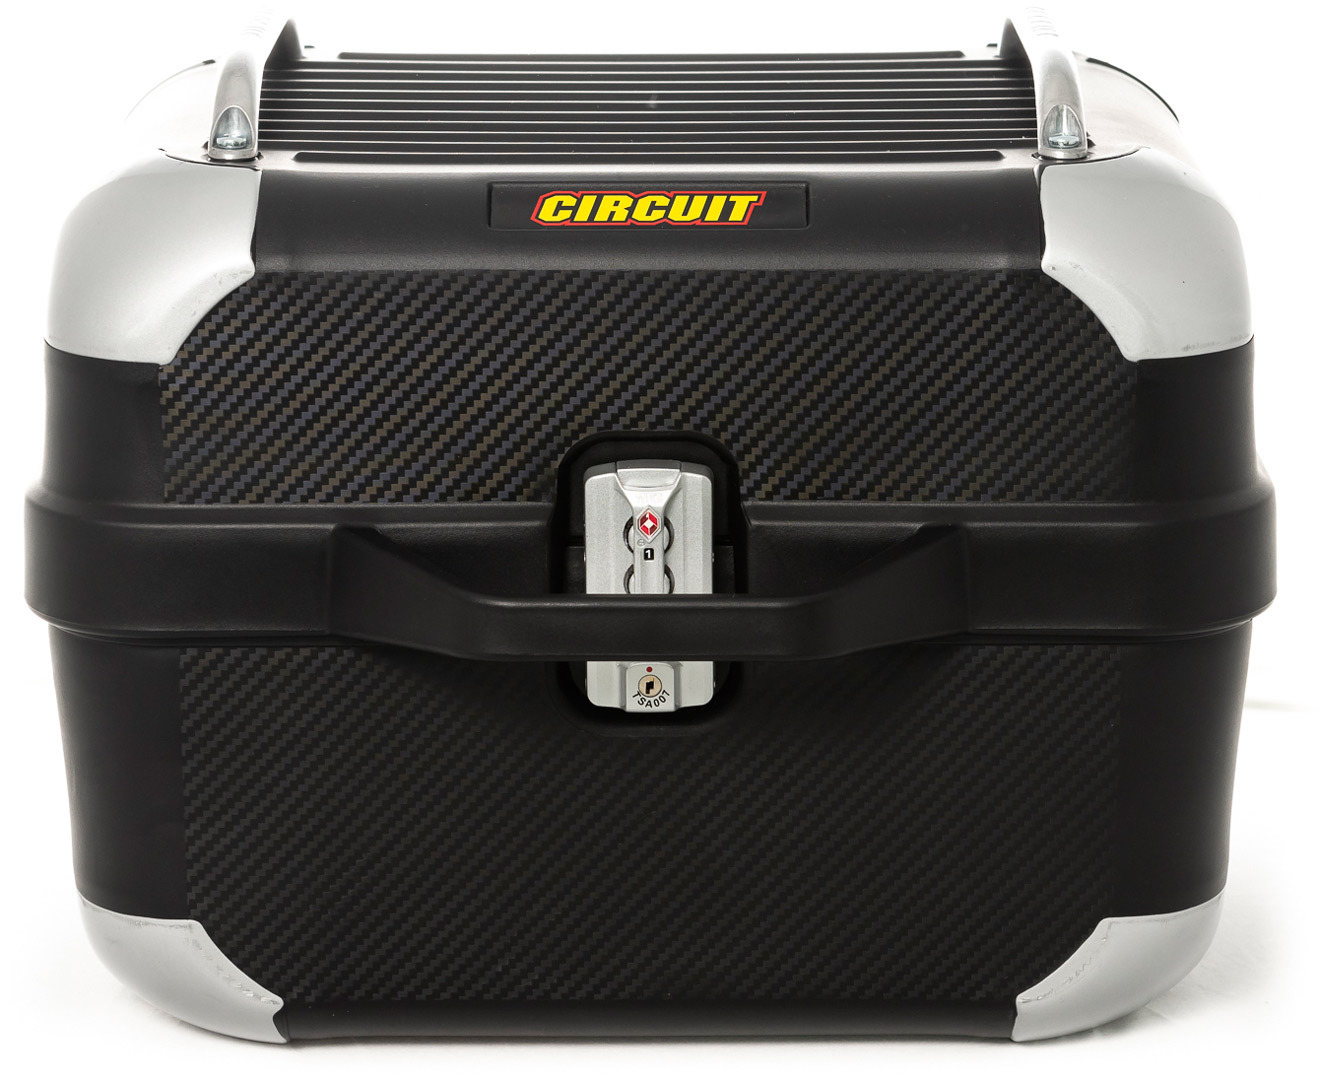 Багажник для мотоцикла съемный Circuit Equipment Smart 28L Long, черный сетка на багажник мотоцикла